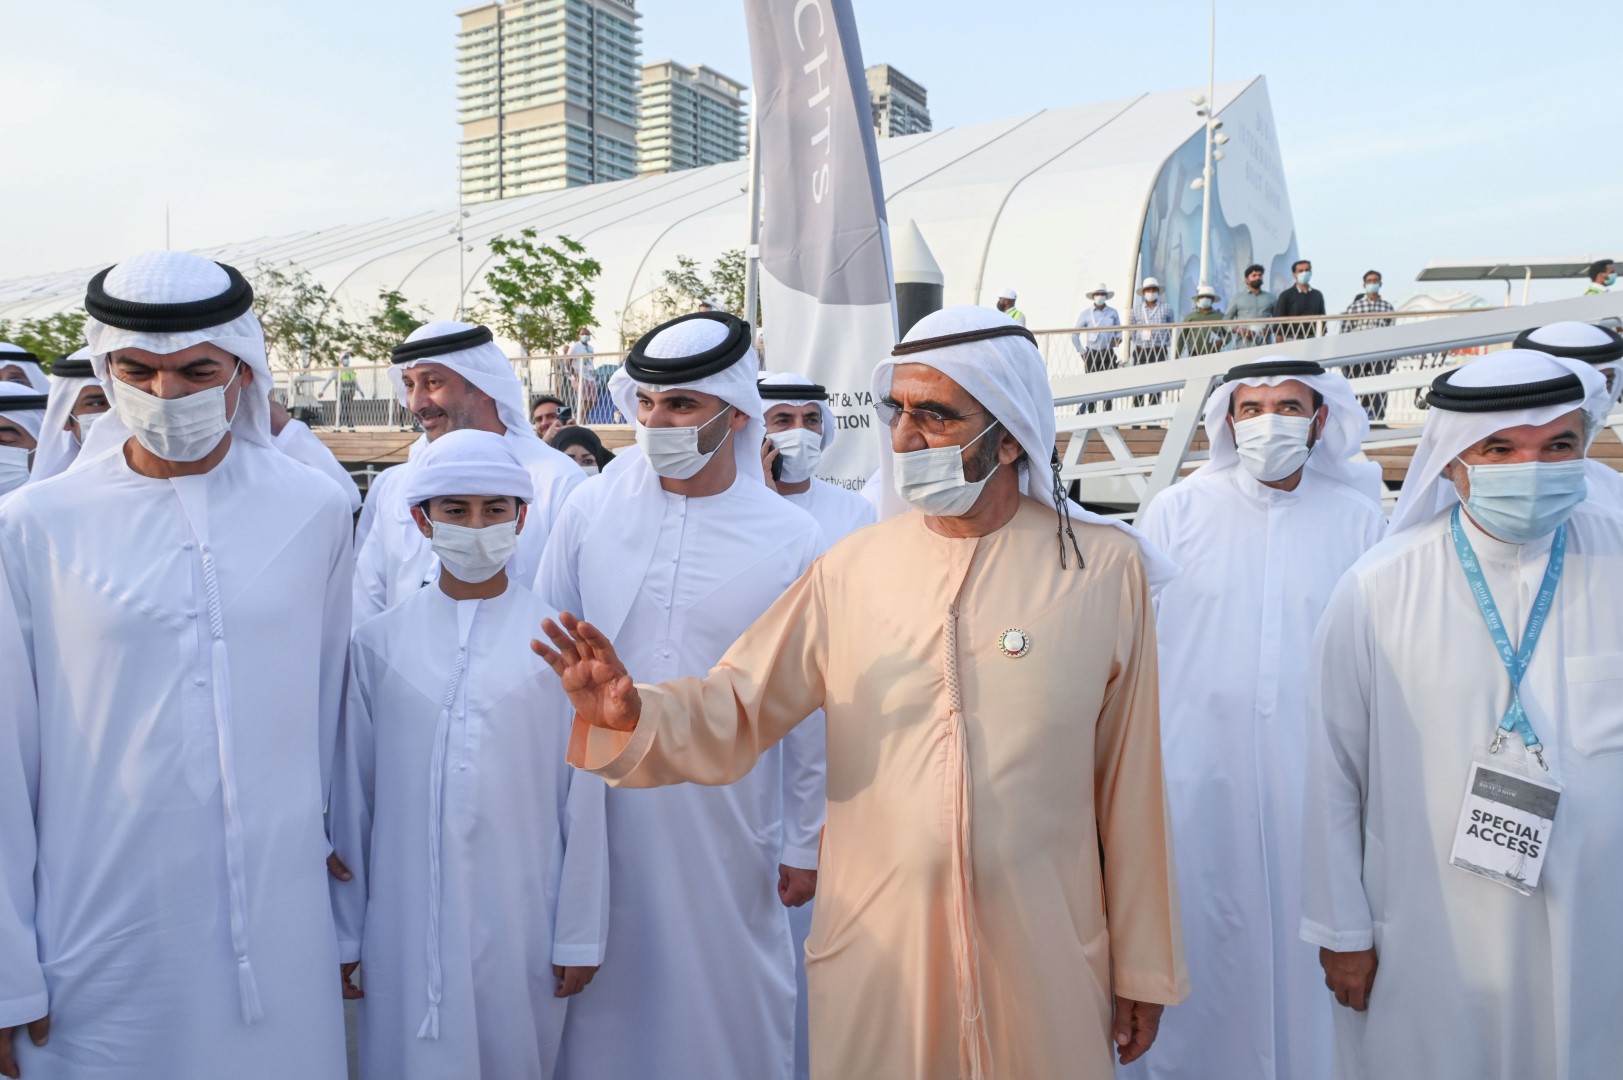 الصورة : محمد بن راشد خلال زيارته معرض دبي العالمي للقوارب بحضور منصور بن محمد ومسؤولين | تصوير: محمد هشام